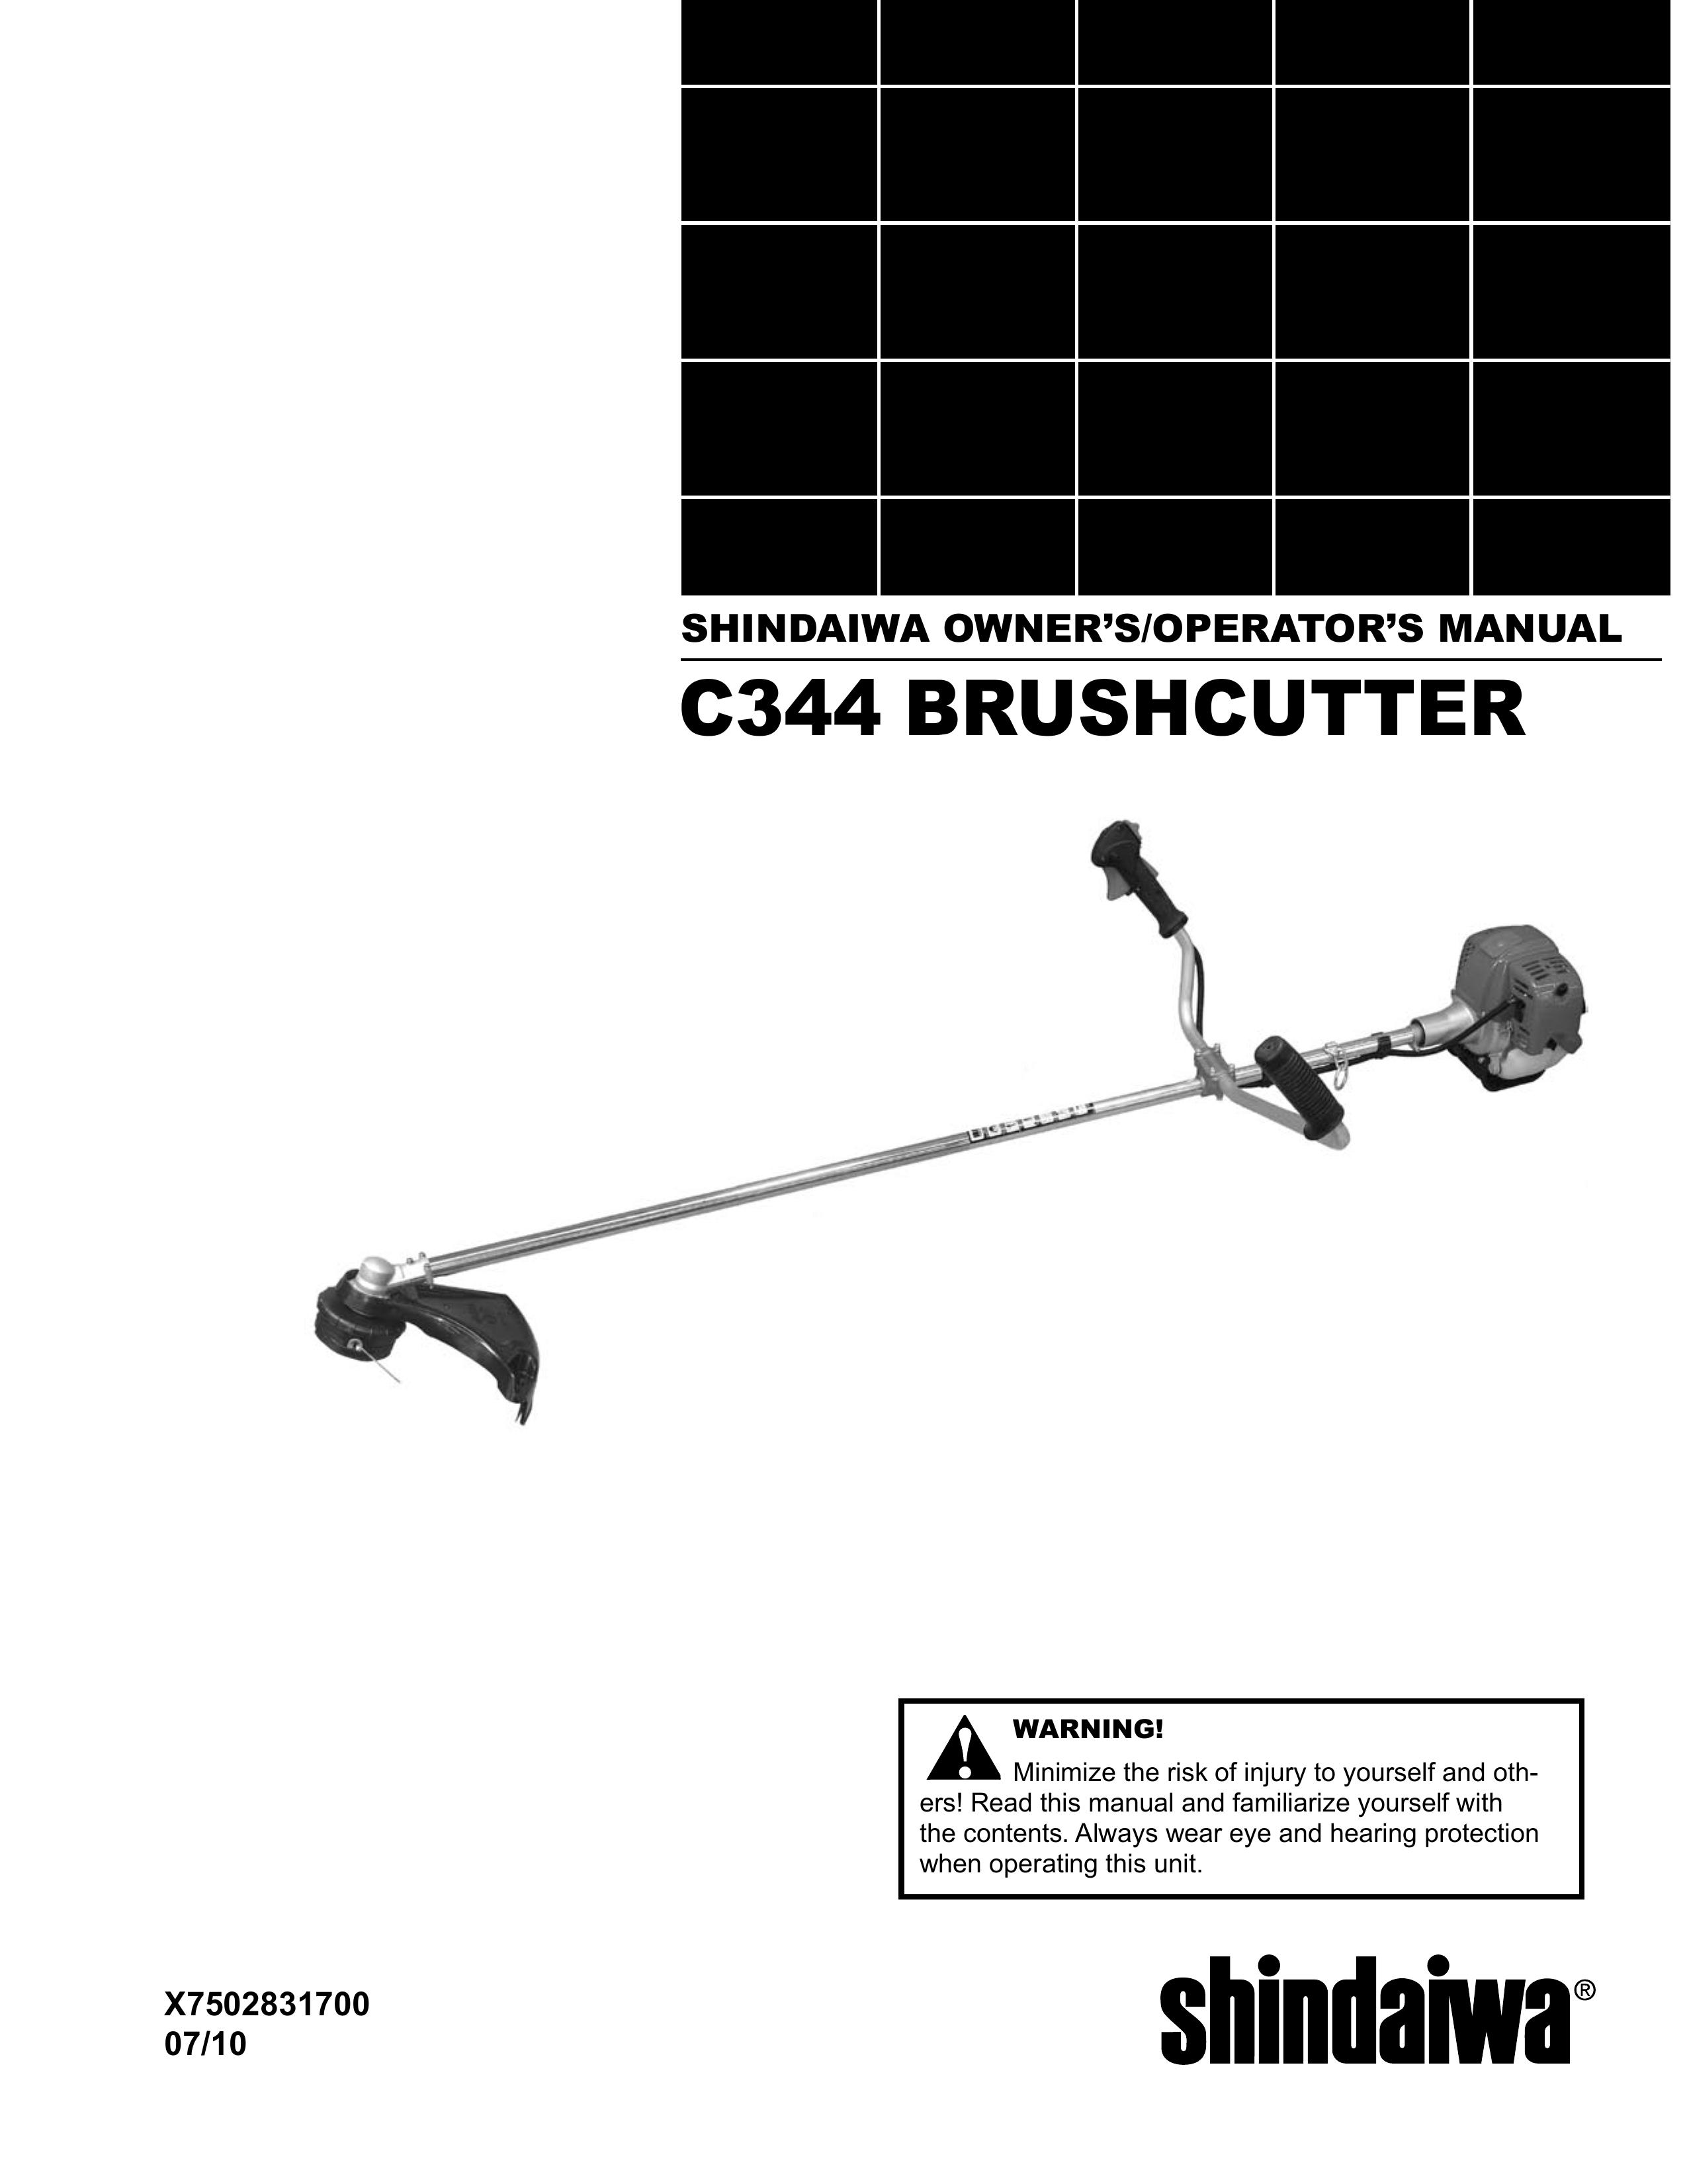 Shindaiwa X7502831700 Brush Cutter User Manual